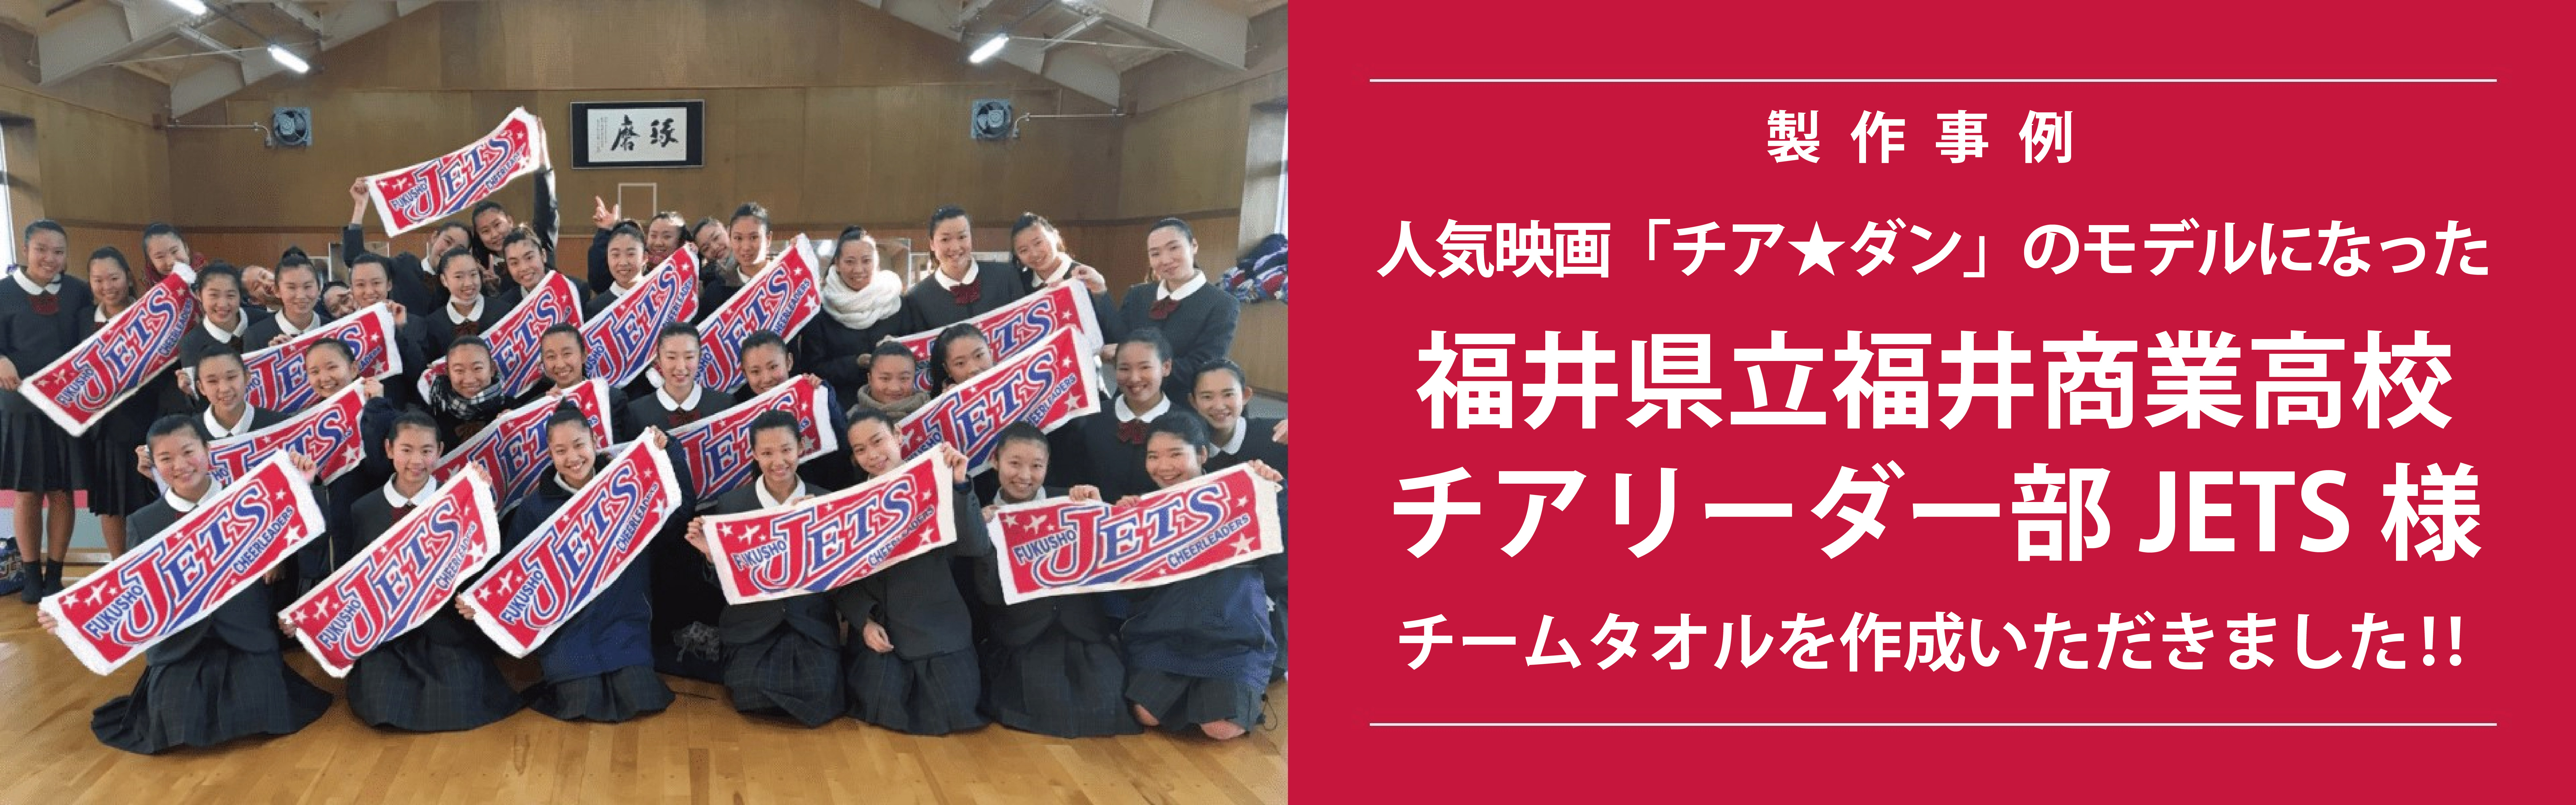 福井商業高校チアリーダー部 JETS(ジェッツ)のみなさんにチームタオルを作成いただきました!!